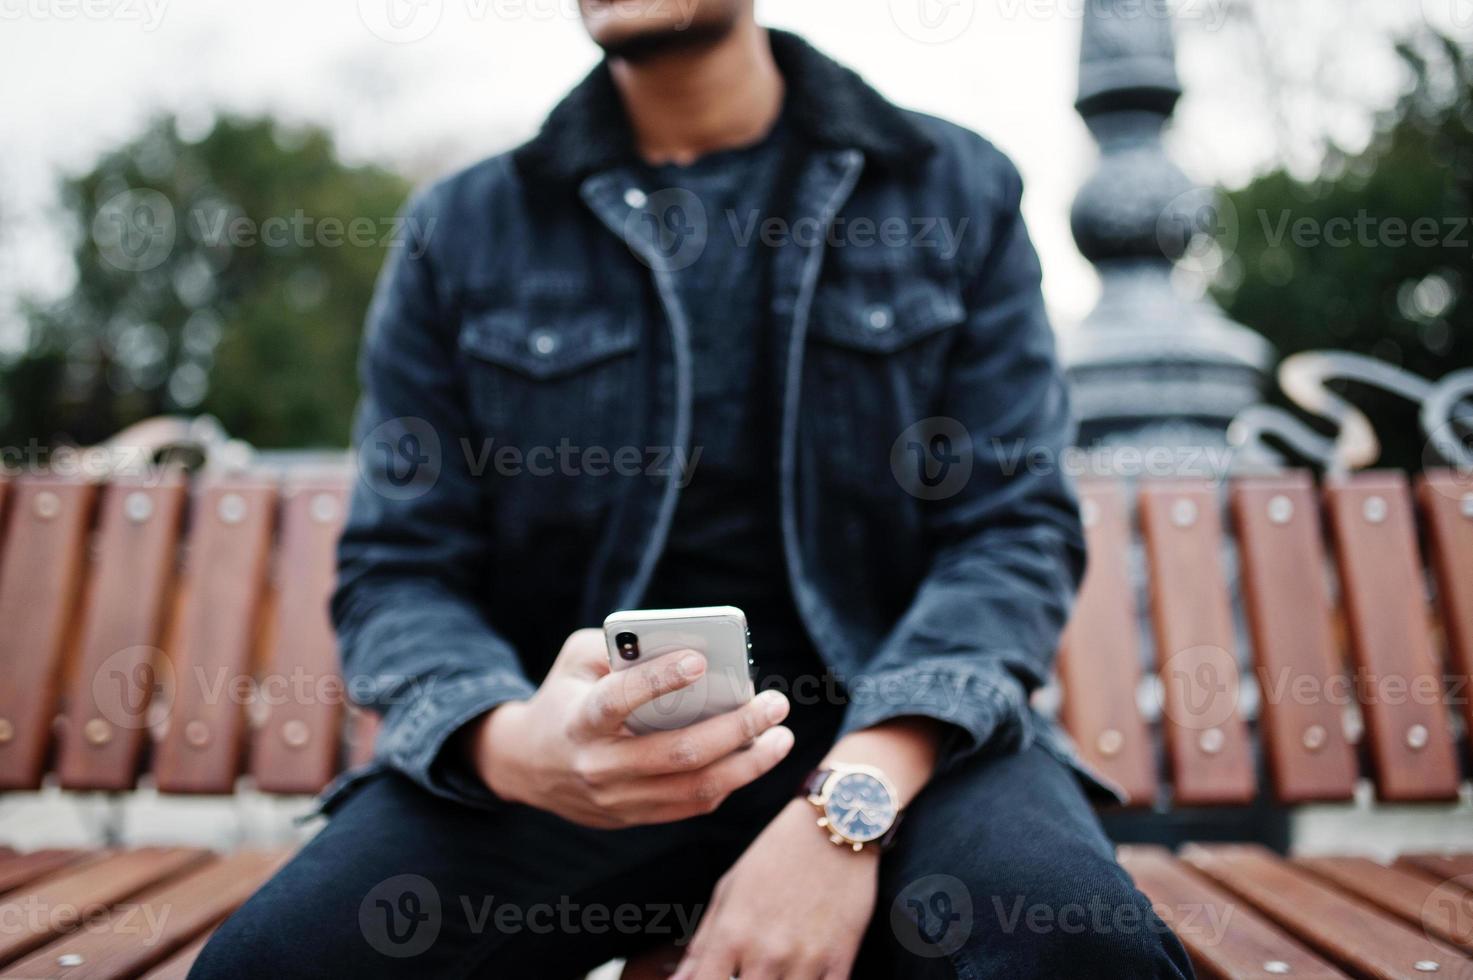 un hombre indio apuesto y de moda con una chaqueta negra de jeans posó al aire libre, sentado en un banco con el teléfono móvil a mano. foto